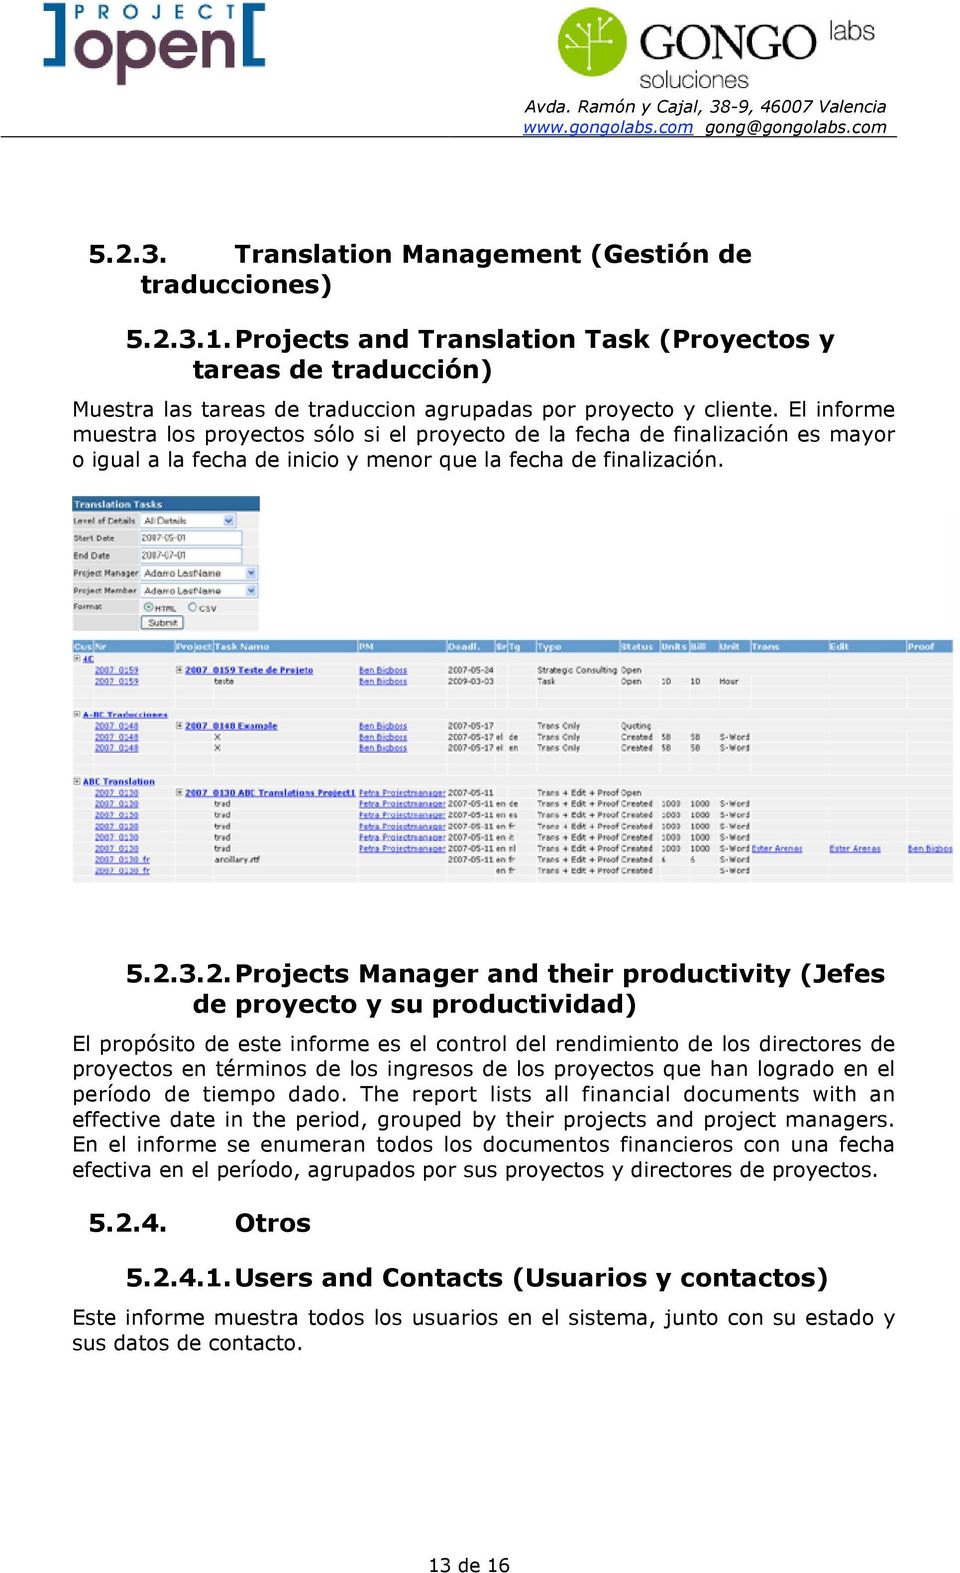 3.2. Projects Manager and their productivity (Jefes de proyecto y su productividad) El propósito de este informe es el control del rendimiento de los directores de proyectos en términos de los